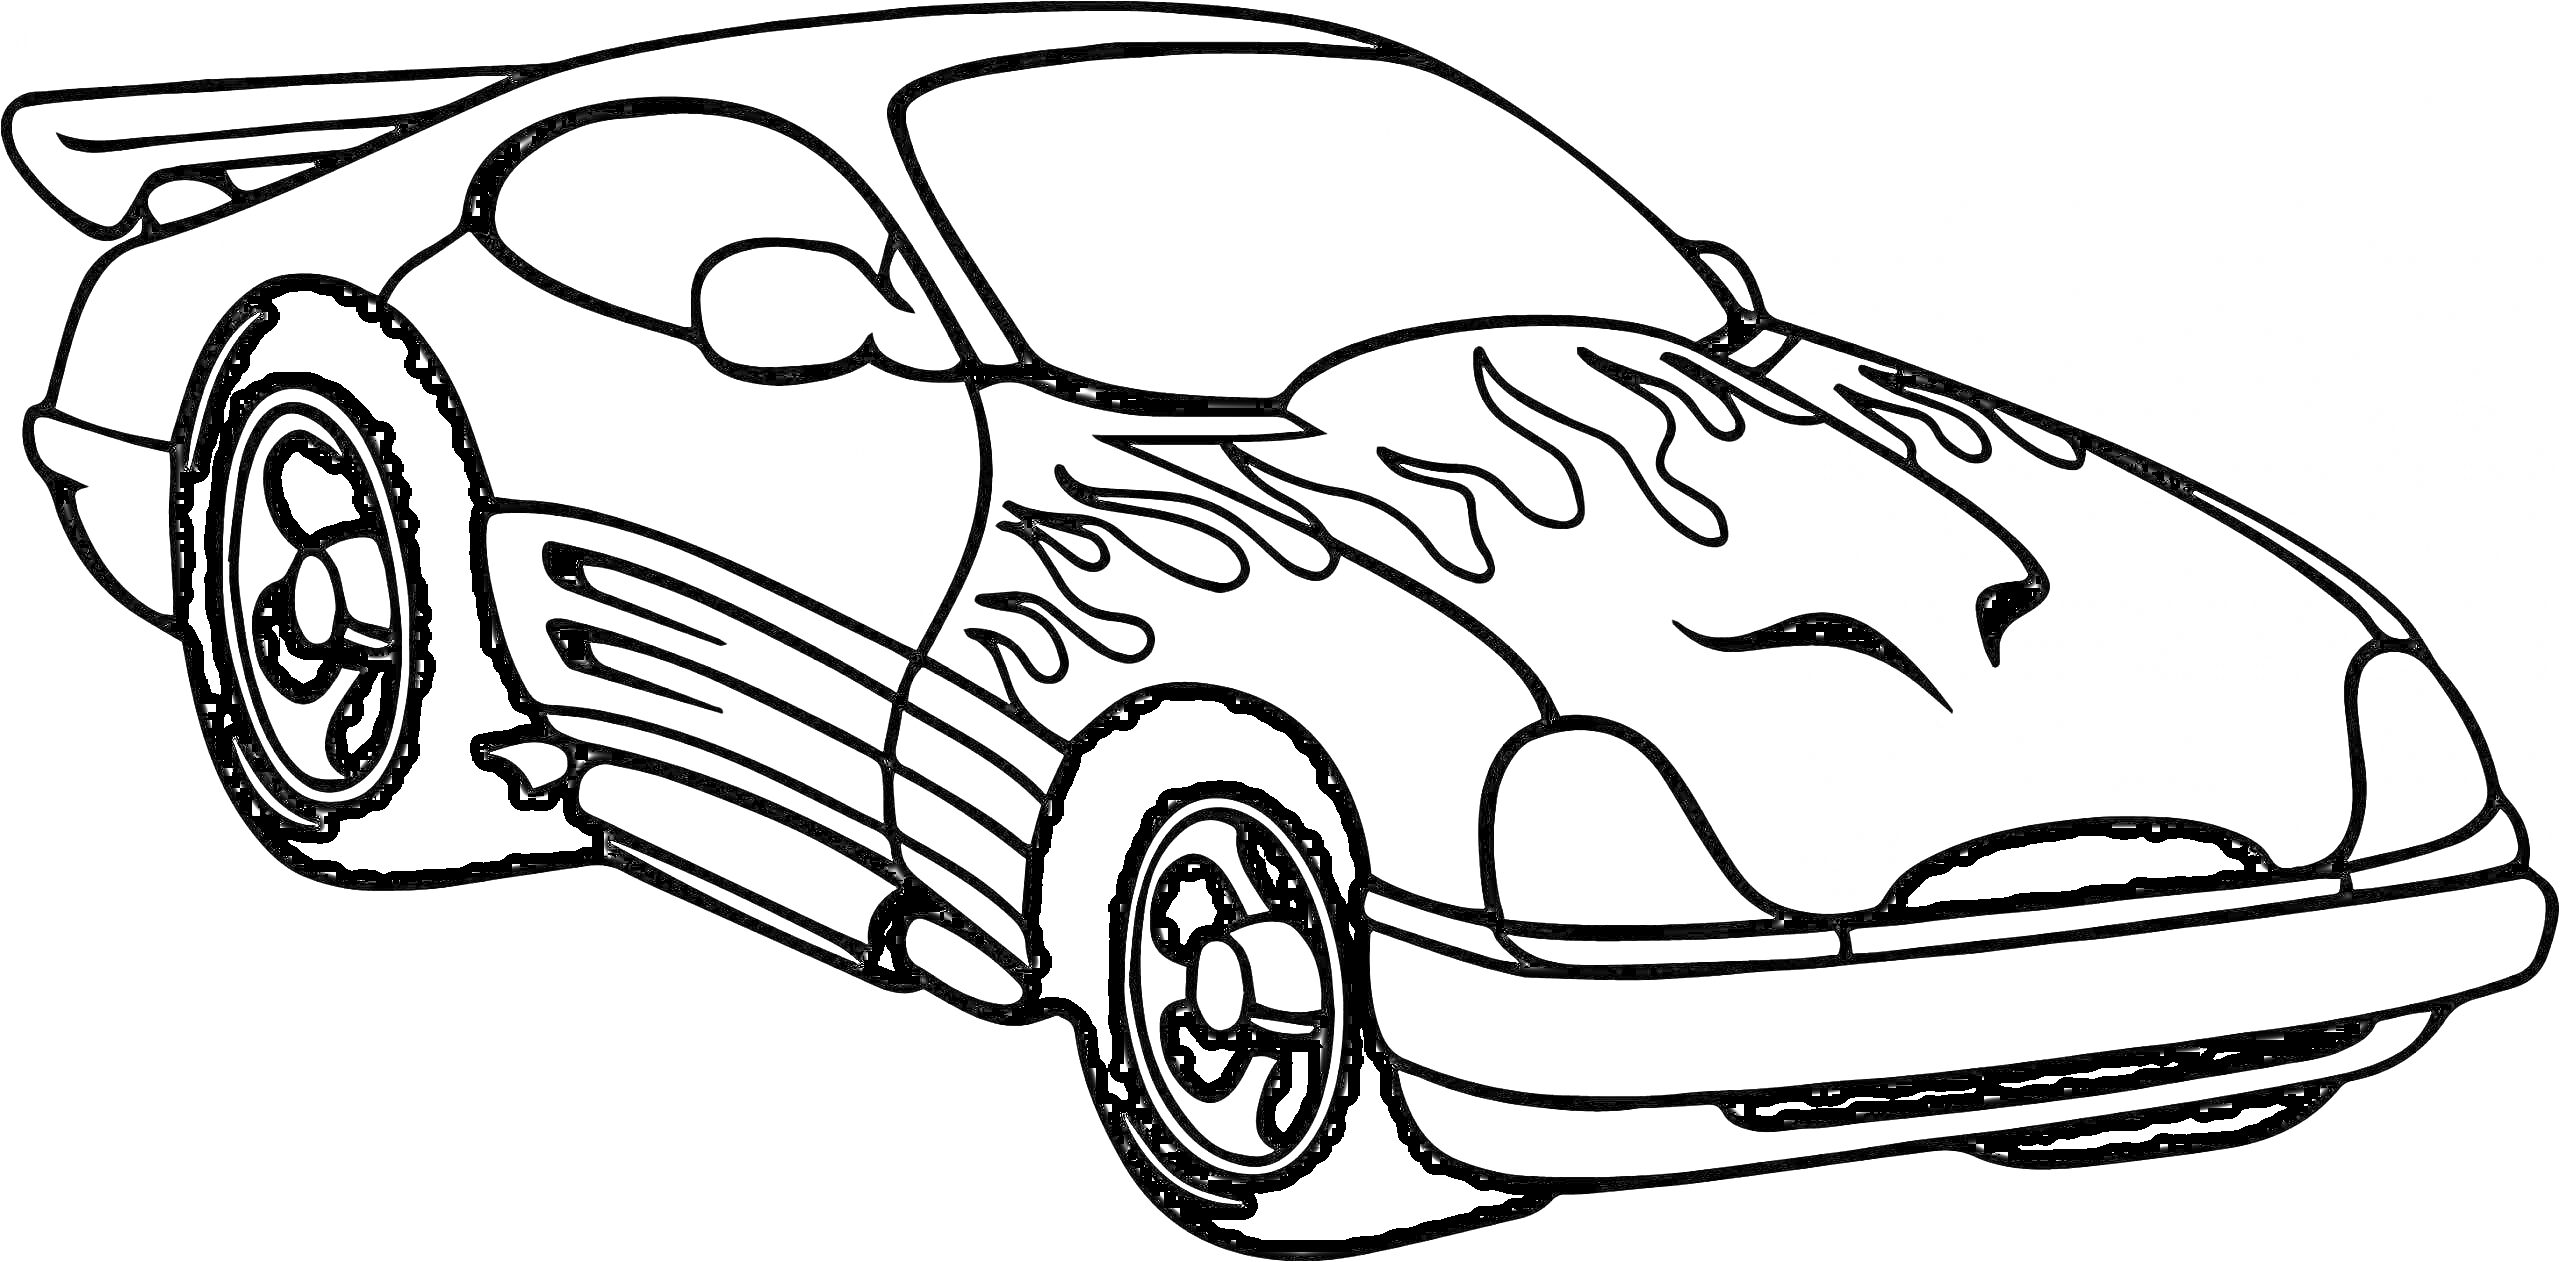 Раскраска Гоночная машина Хот Вилс с огненными узорами и спойлером